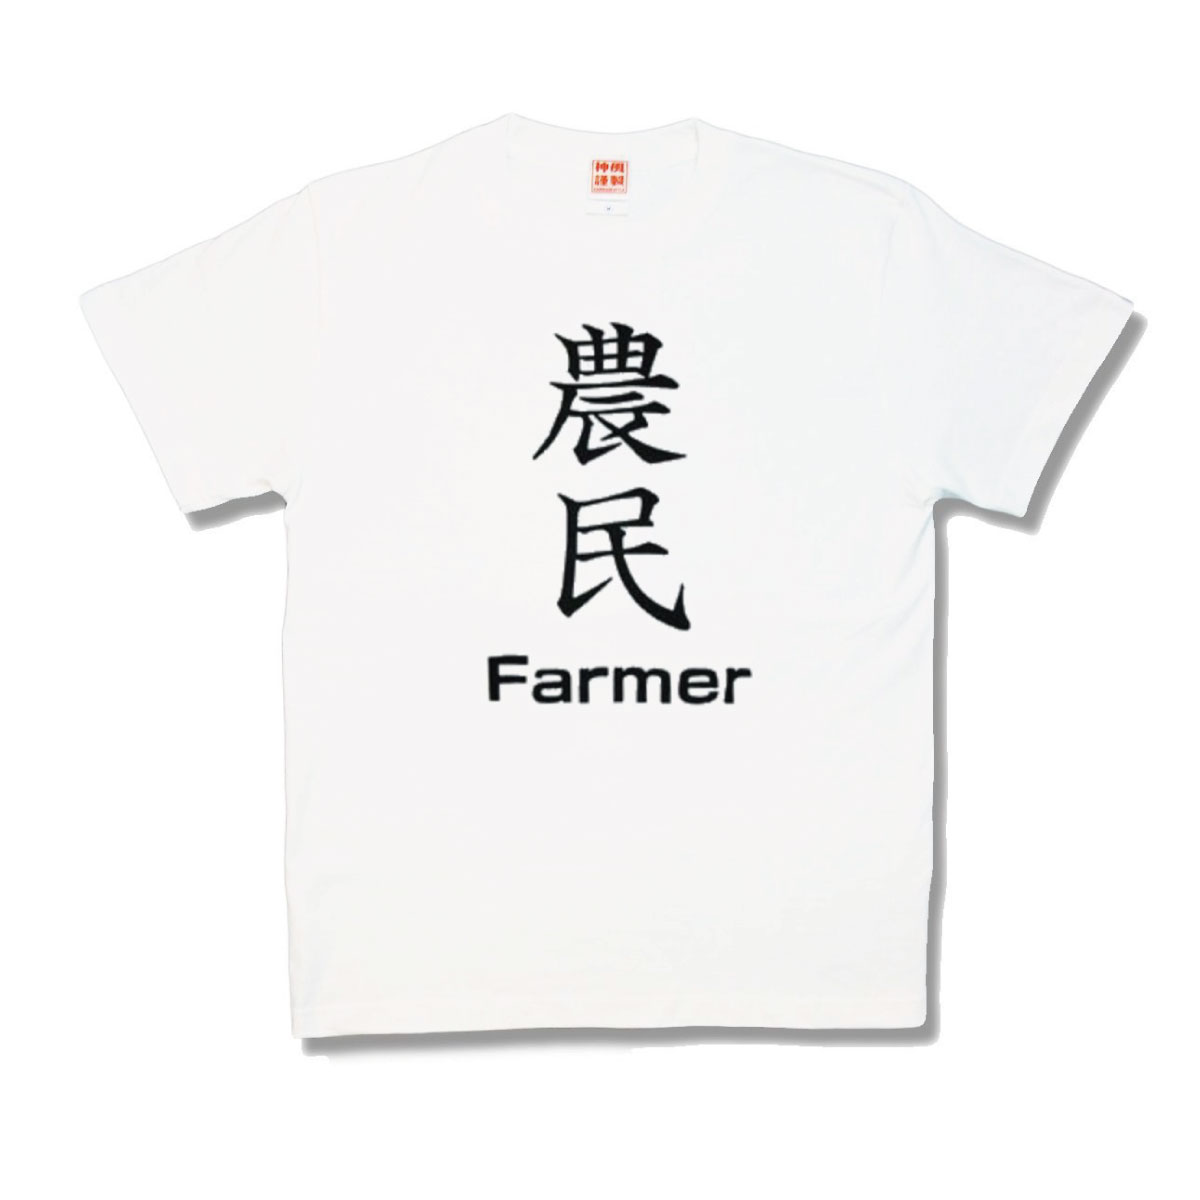 オンラインショッピング 通販 おもしろTシャツ 農民